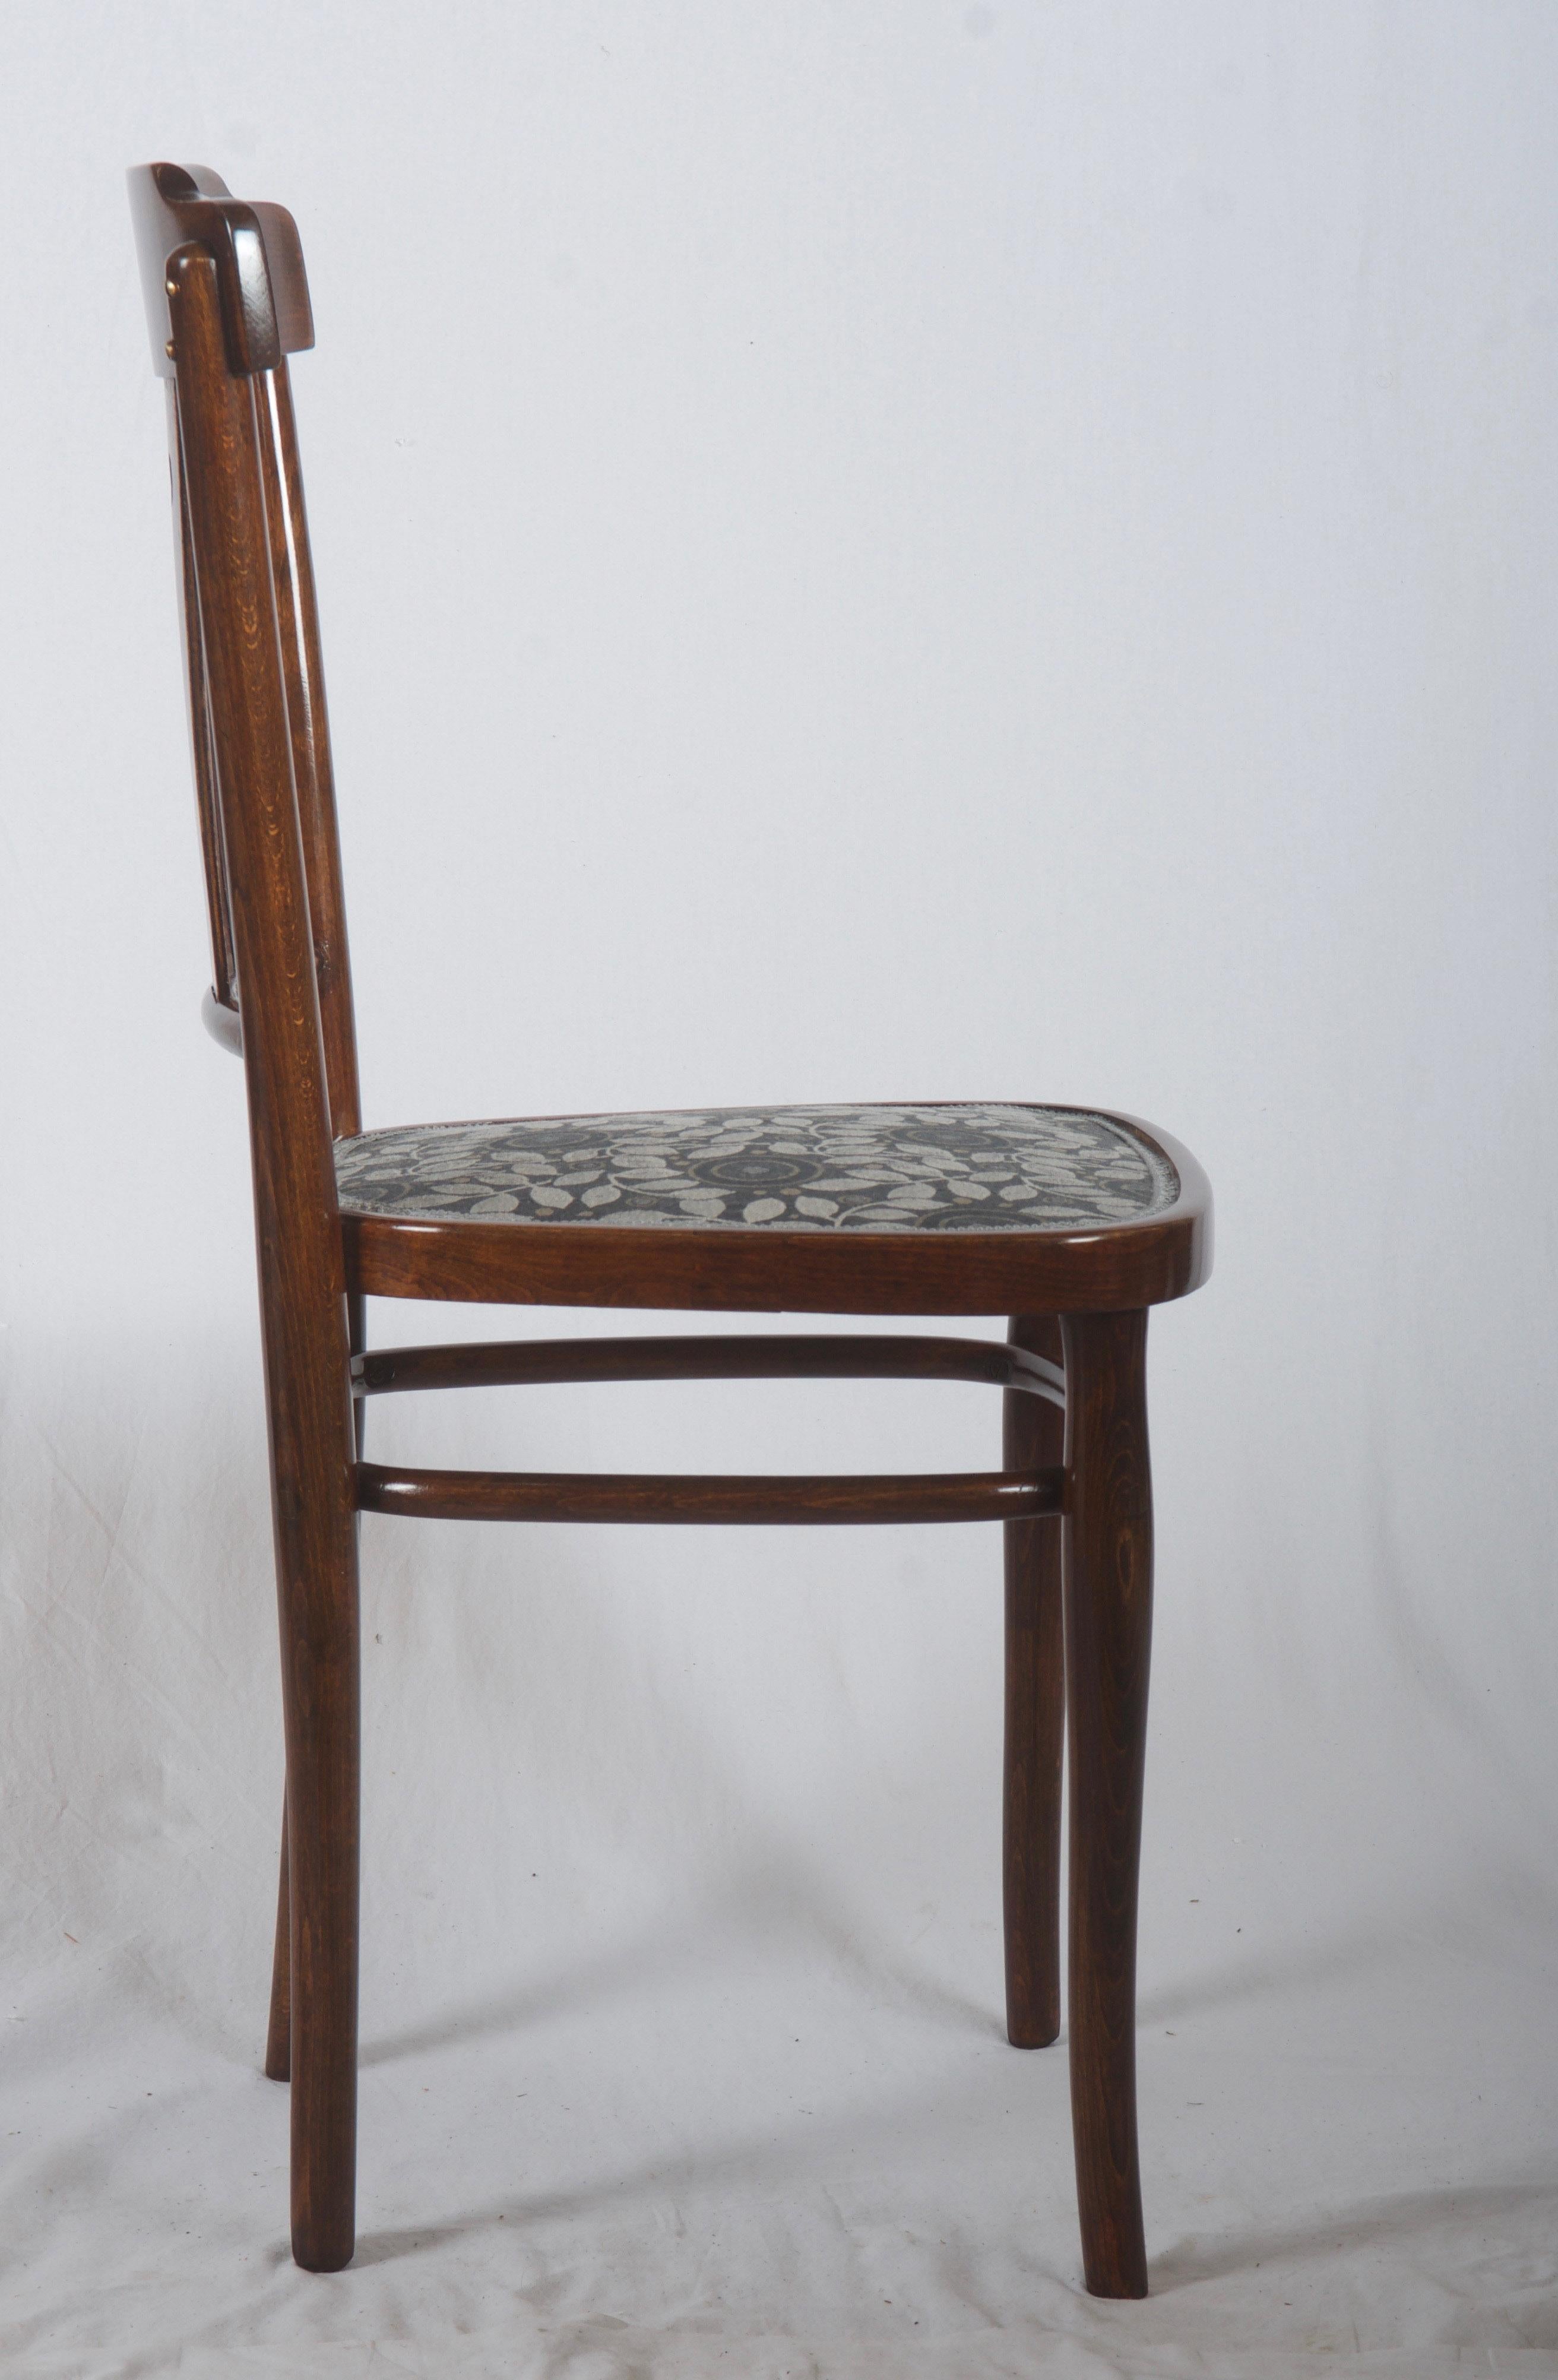 Buche Bugholz Nussbaum gebeizt mit gepolstertem Sitz (Stoff entworfen von Josef Hoffmann), hergestellt in Österreich um 1900.
Vier Stück verfügbar. Nur eine restauriert jetzt, Lieferzeit für den Rest etwa 10-14 Tage.